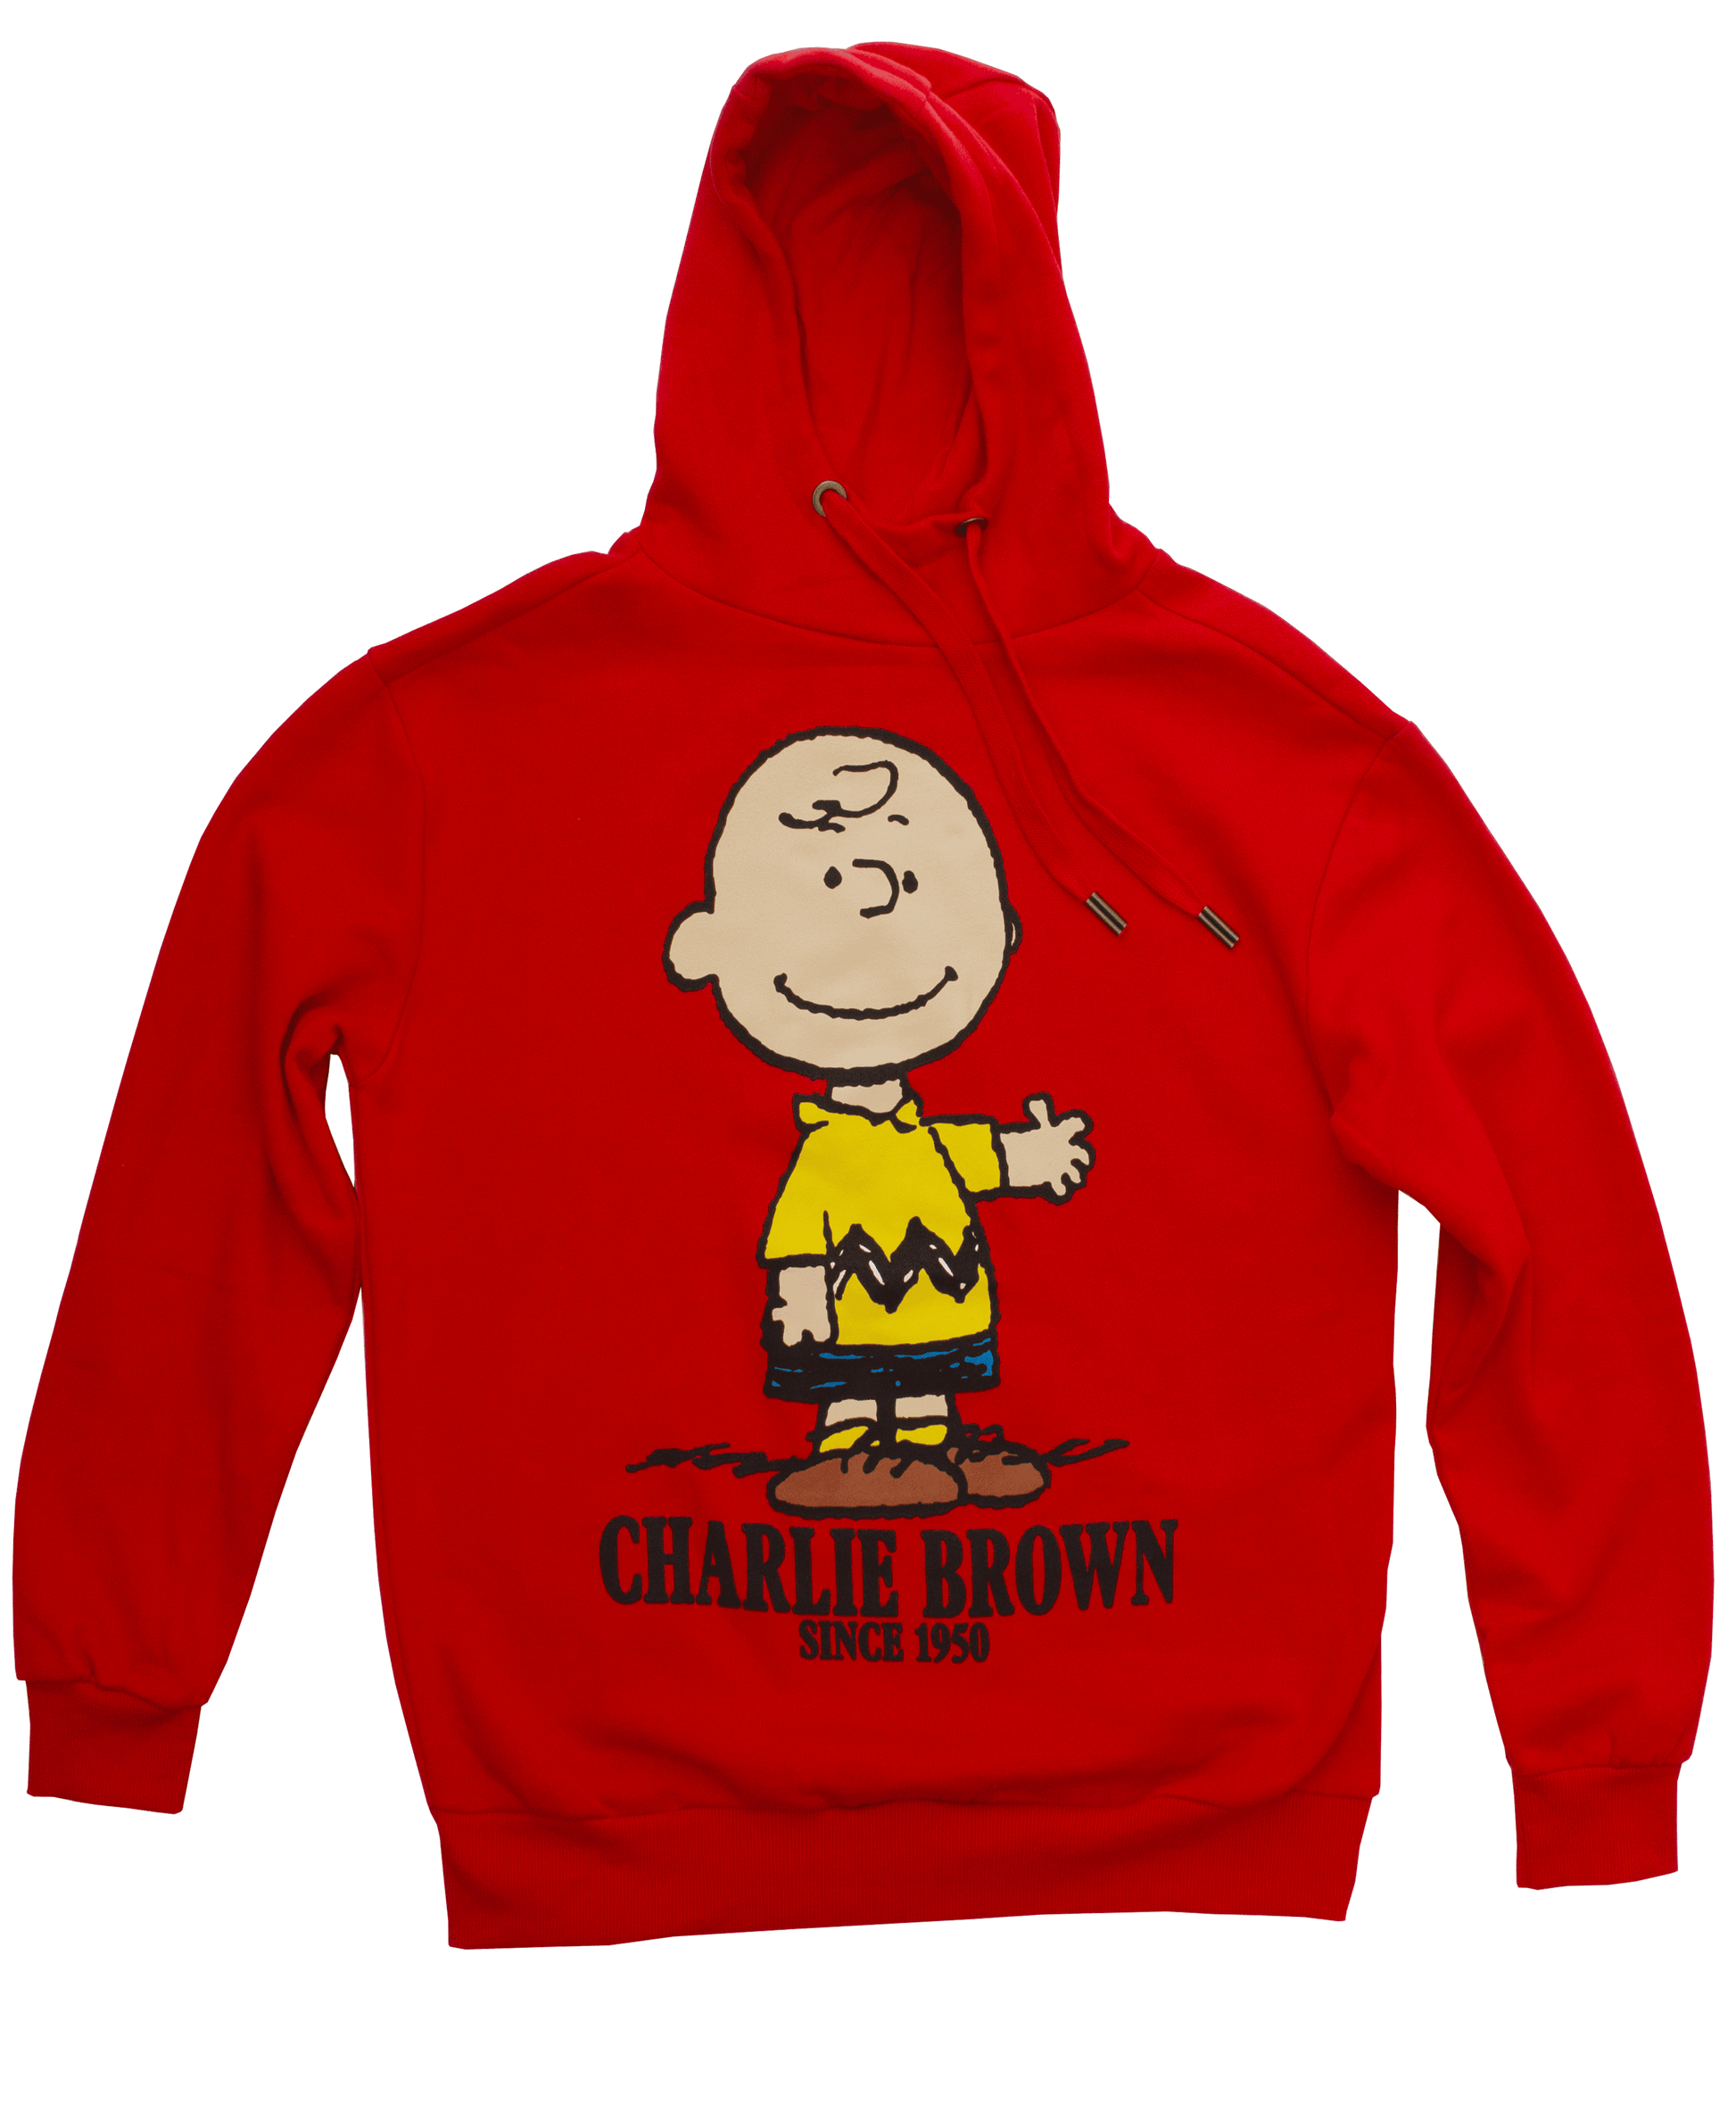 Del Norte cirujano convertible Sudadera Charlie Brown – Beat Bear